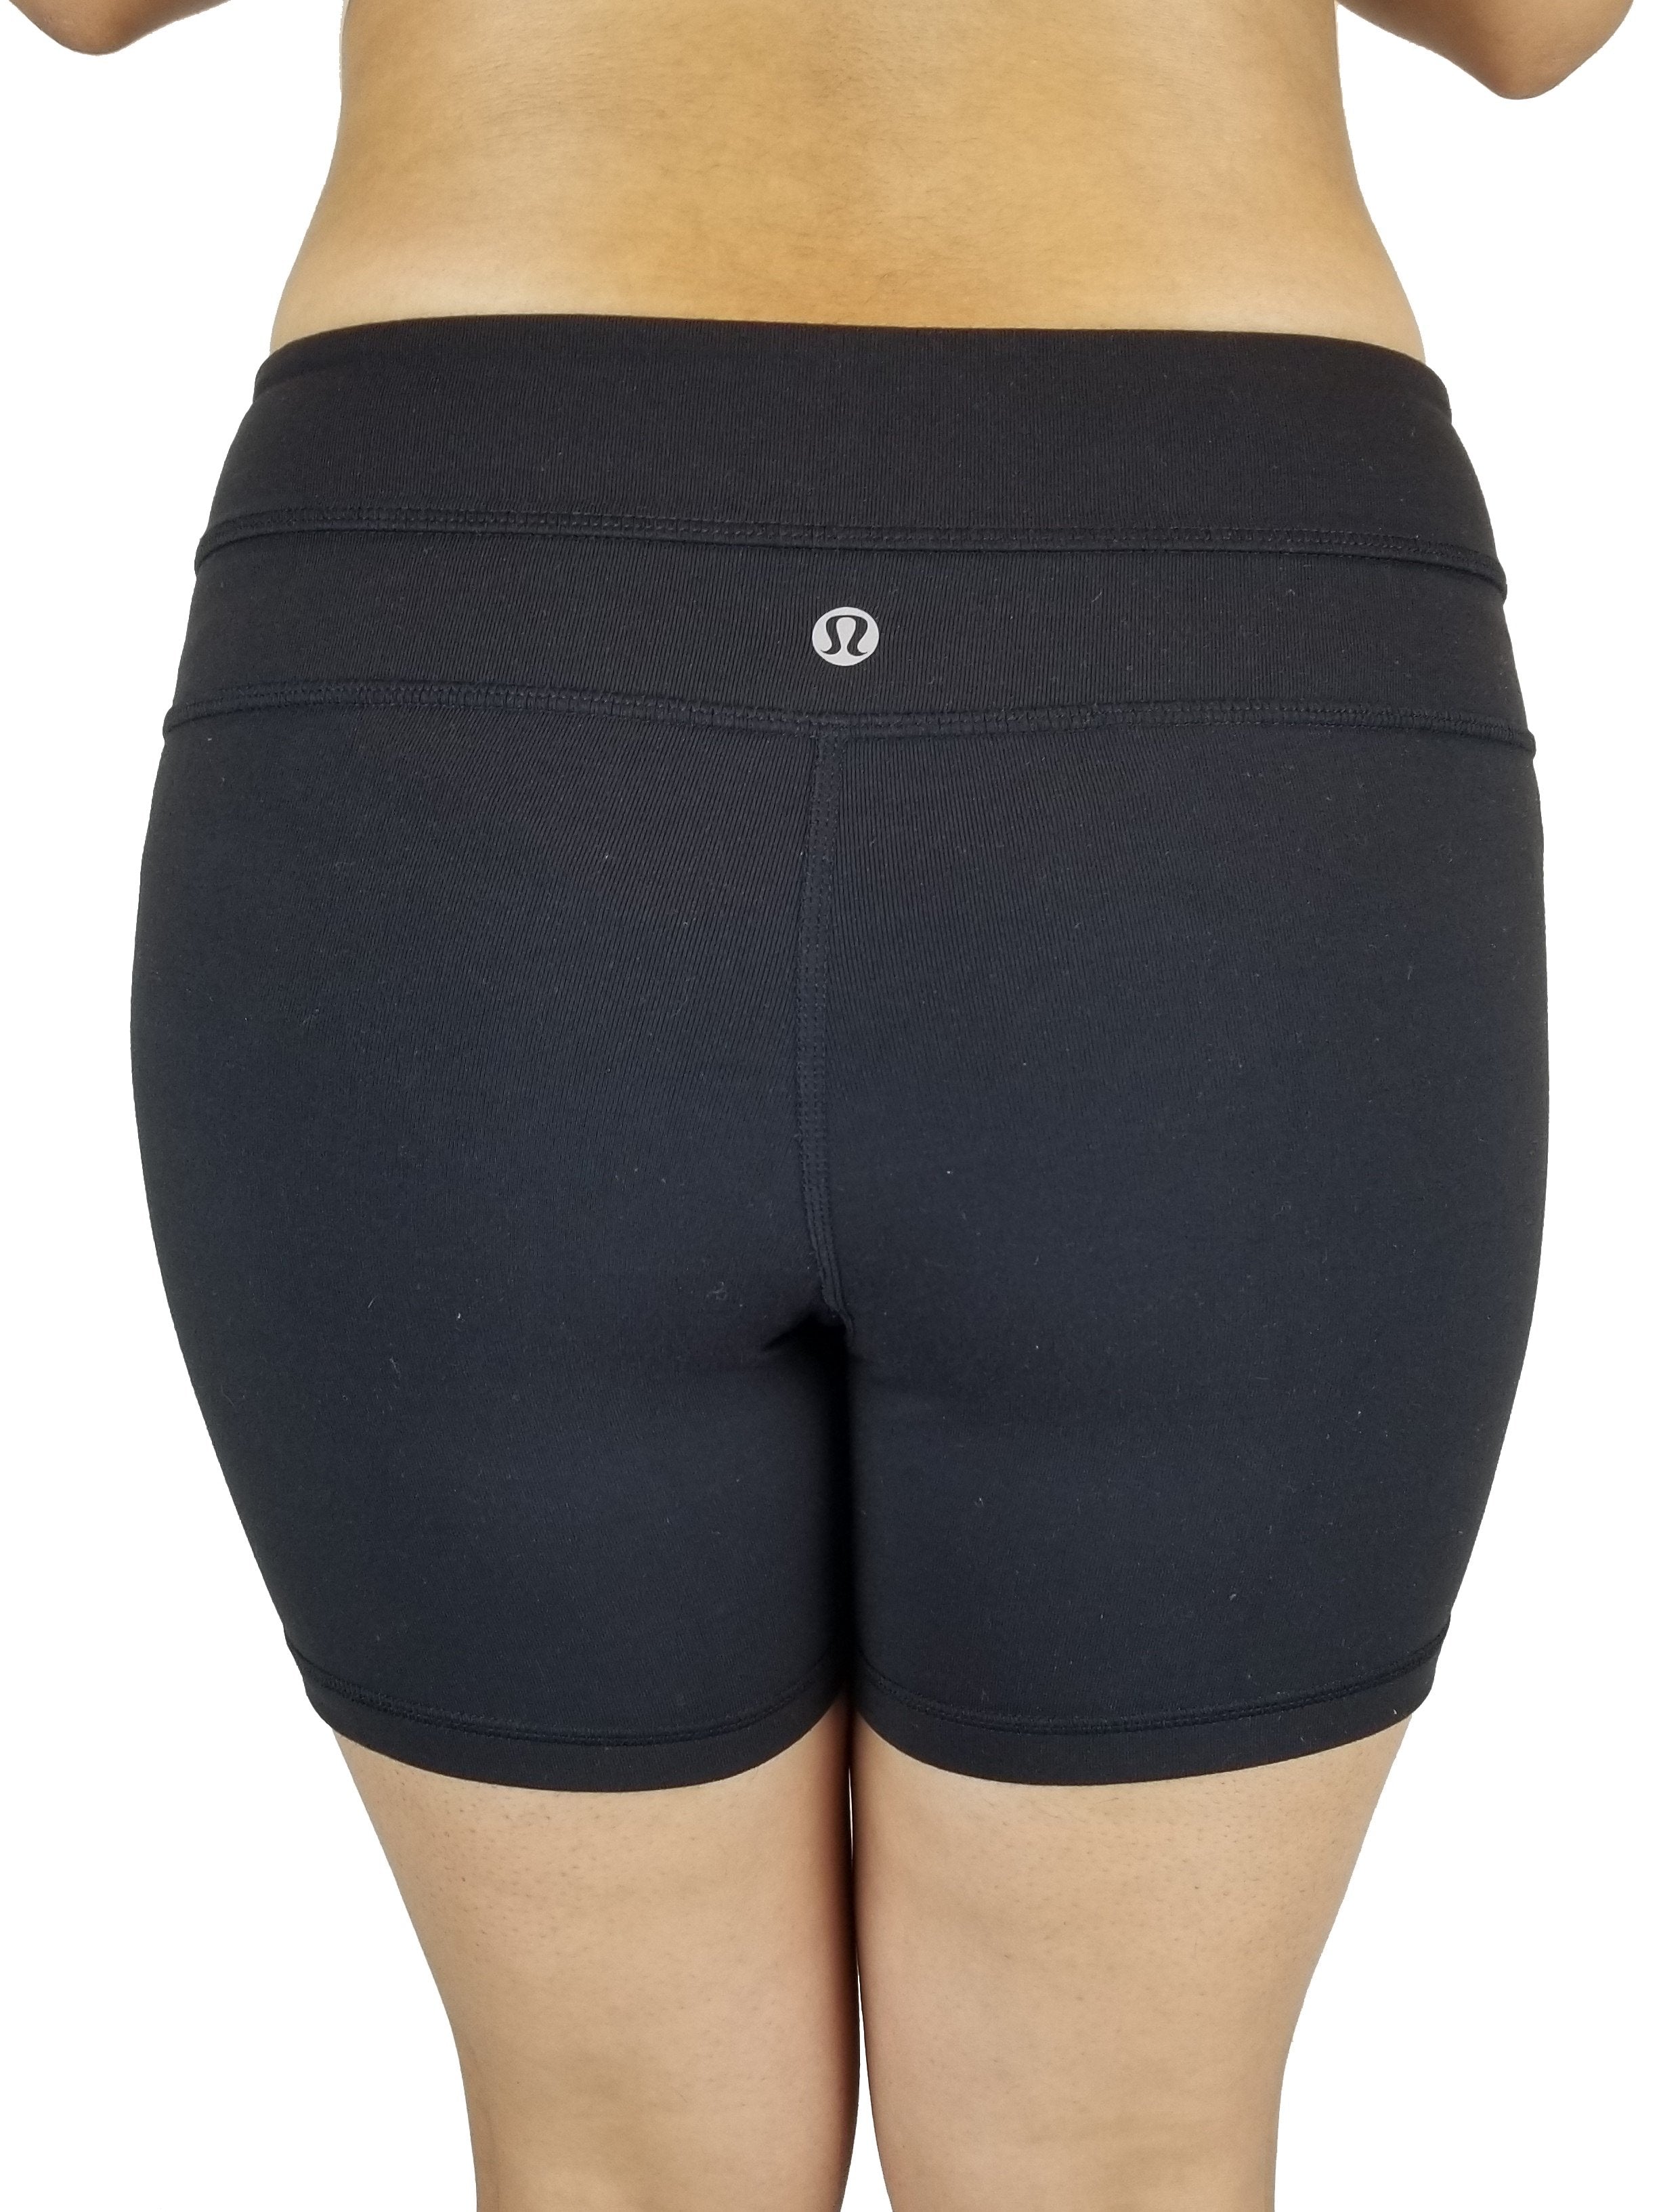 lululemon Women's Original 6 Align Shorts